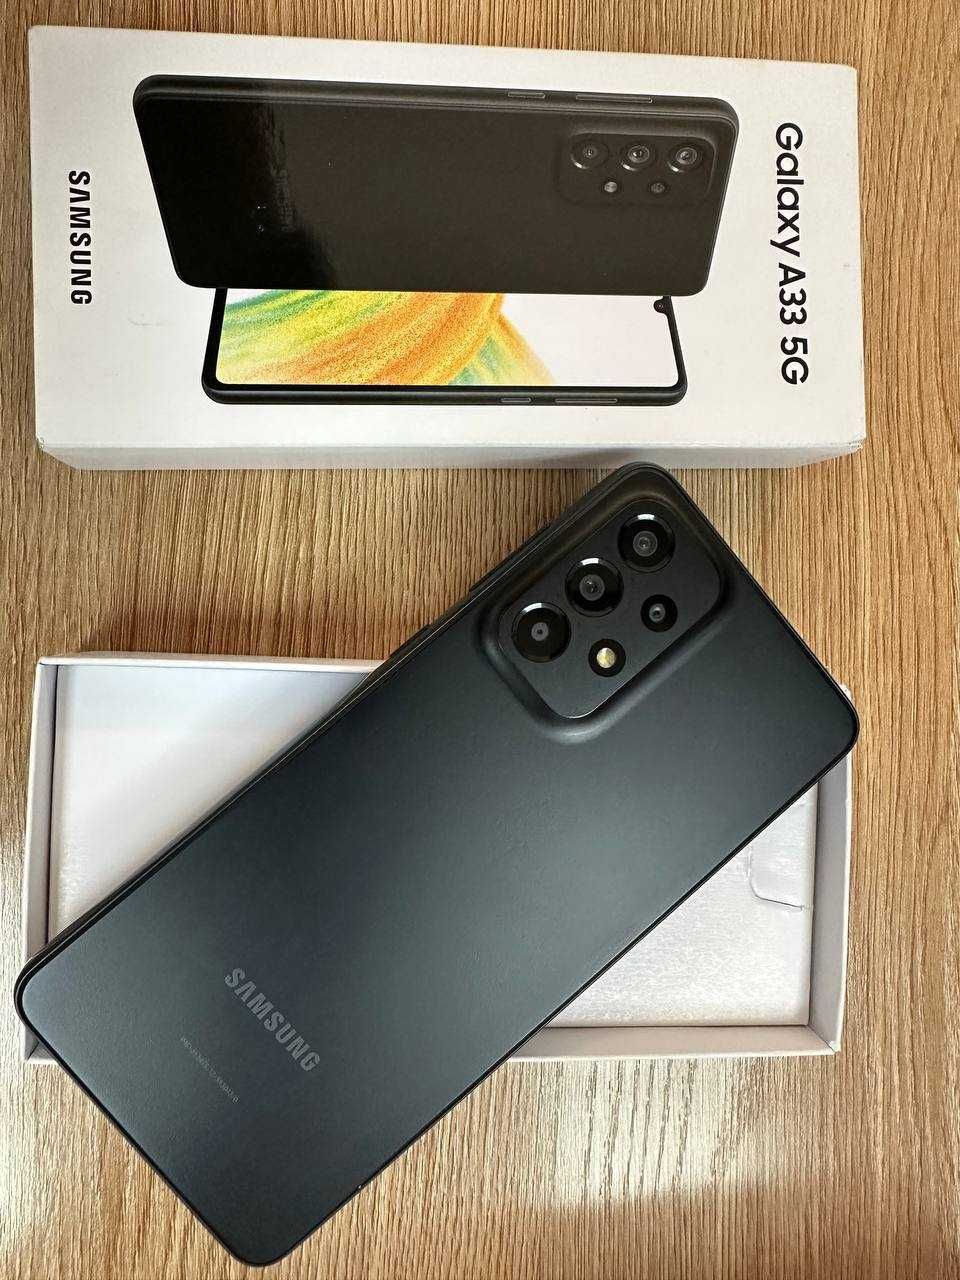 Redmi 9C , Redmi Note 11 , Galaxy A 33 5 G